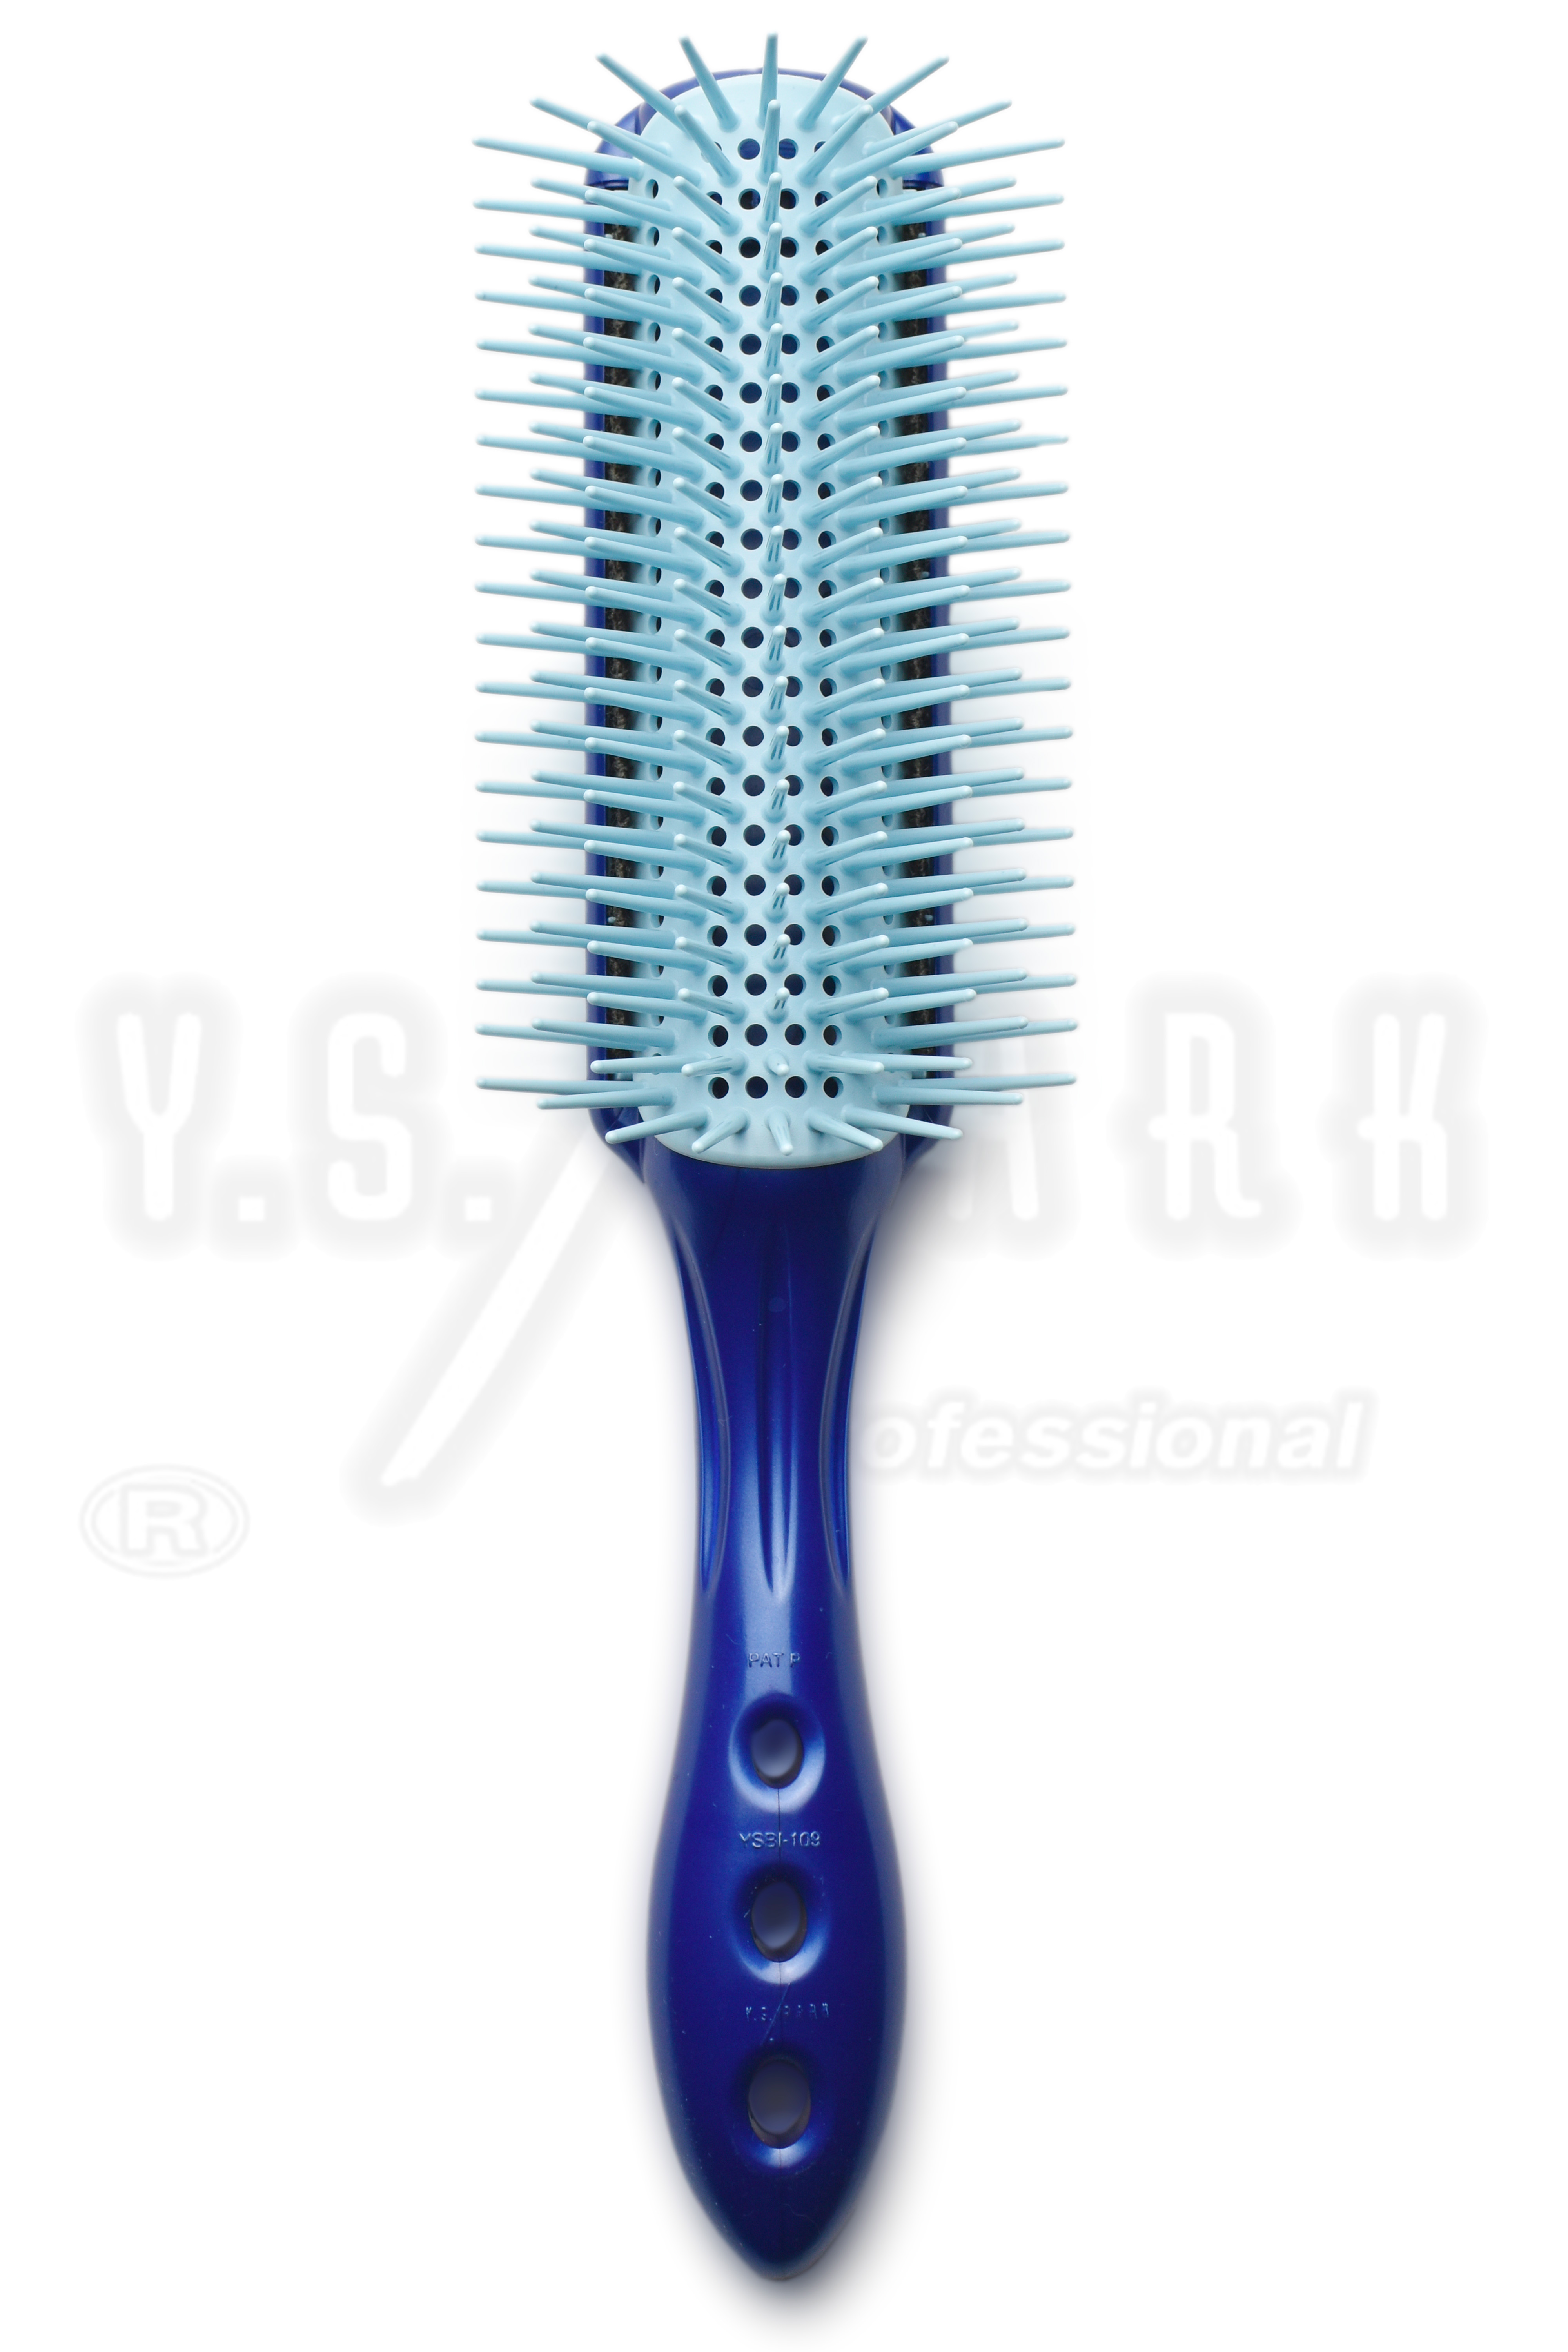 Brosse YS PARK T09, Osaka, fournisseur de ciseaux de coiffure, accessoires, ciseaux japonais, coiffure pour les coiffeurs professionnels...